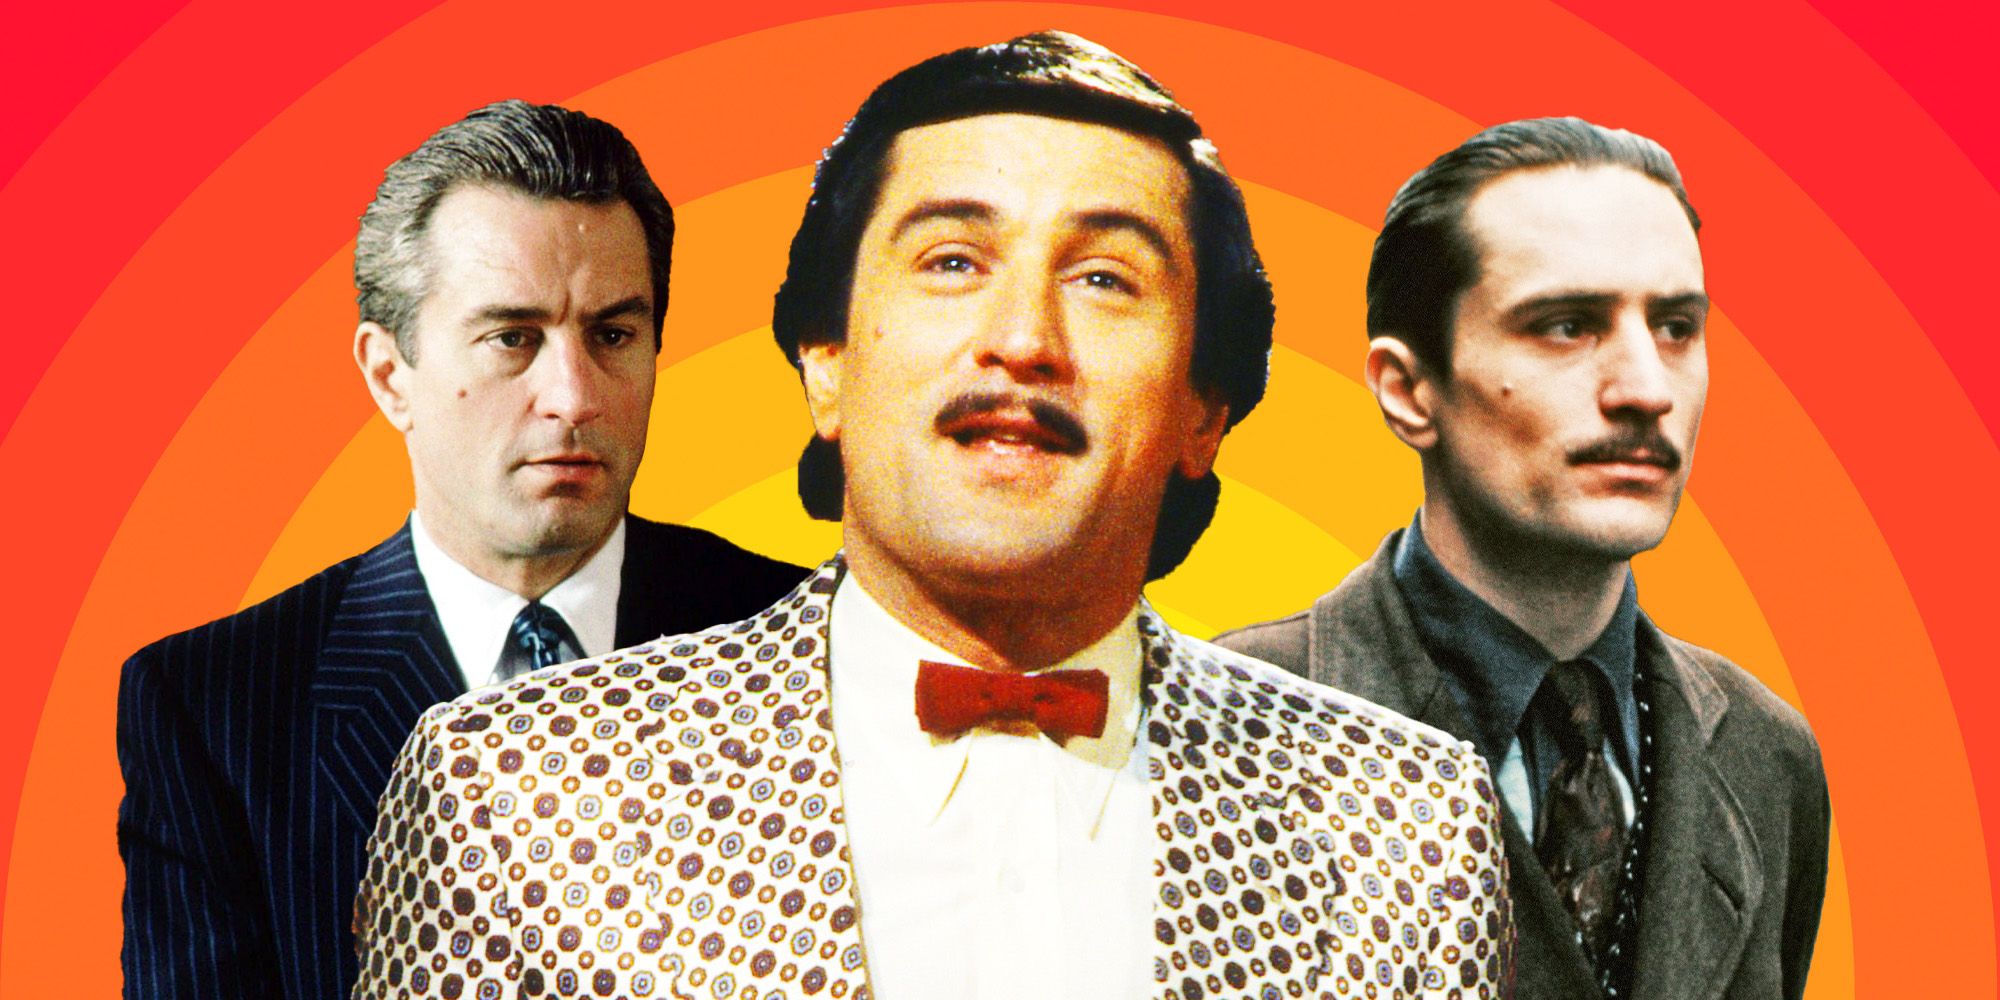 Las 10 mejores películas de Robert De Niro, clasificadas